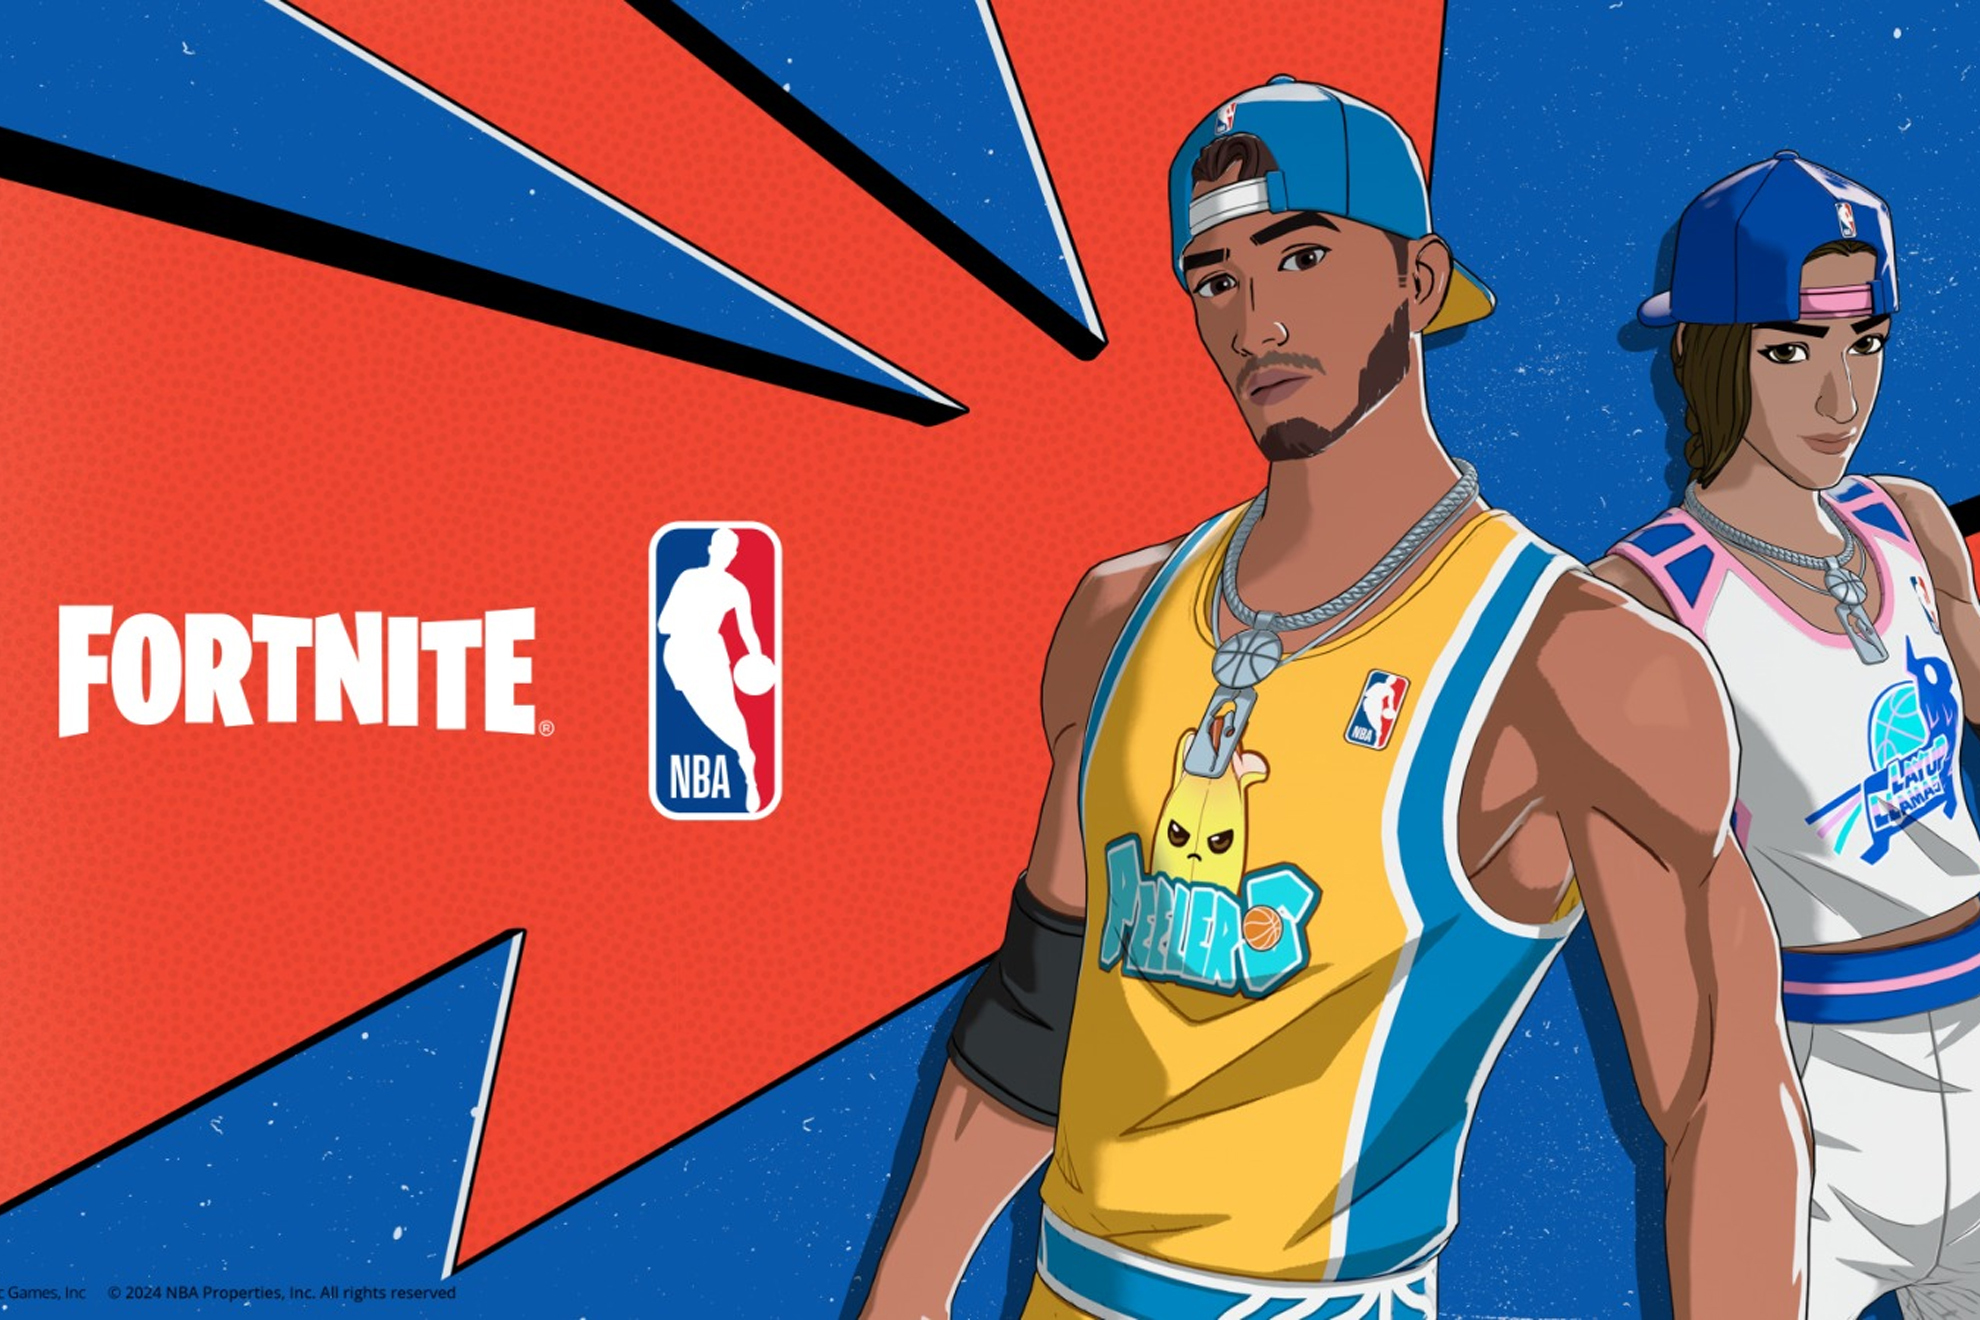 La NBA da el salto a Fortnite con sus nuevas skins personalizables, qu es todo lo que podemos modificar?